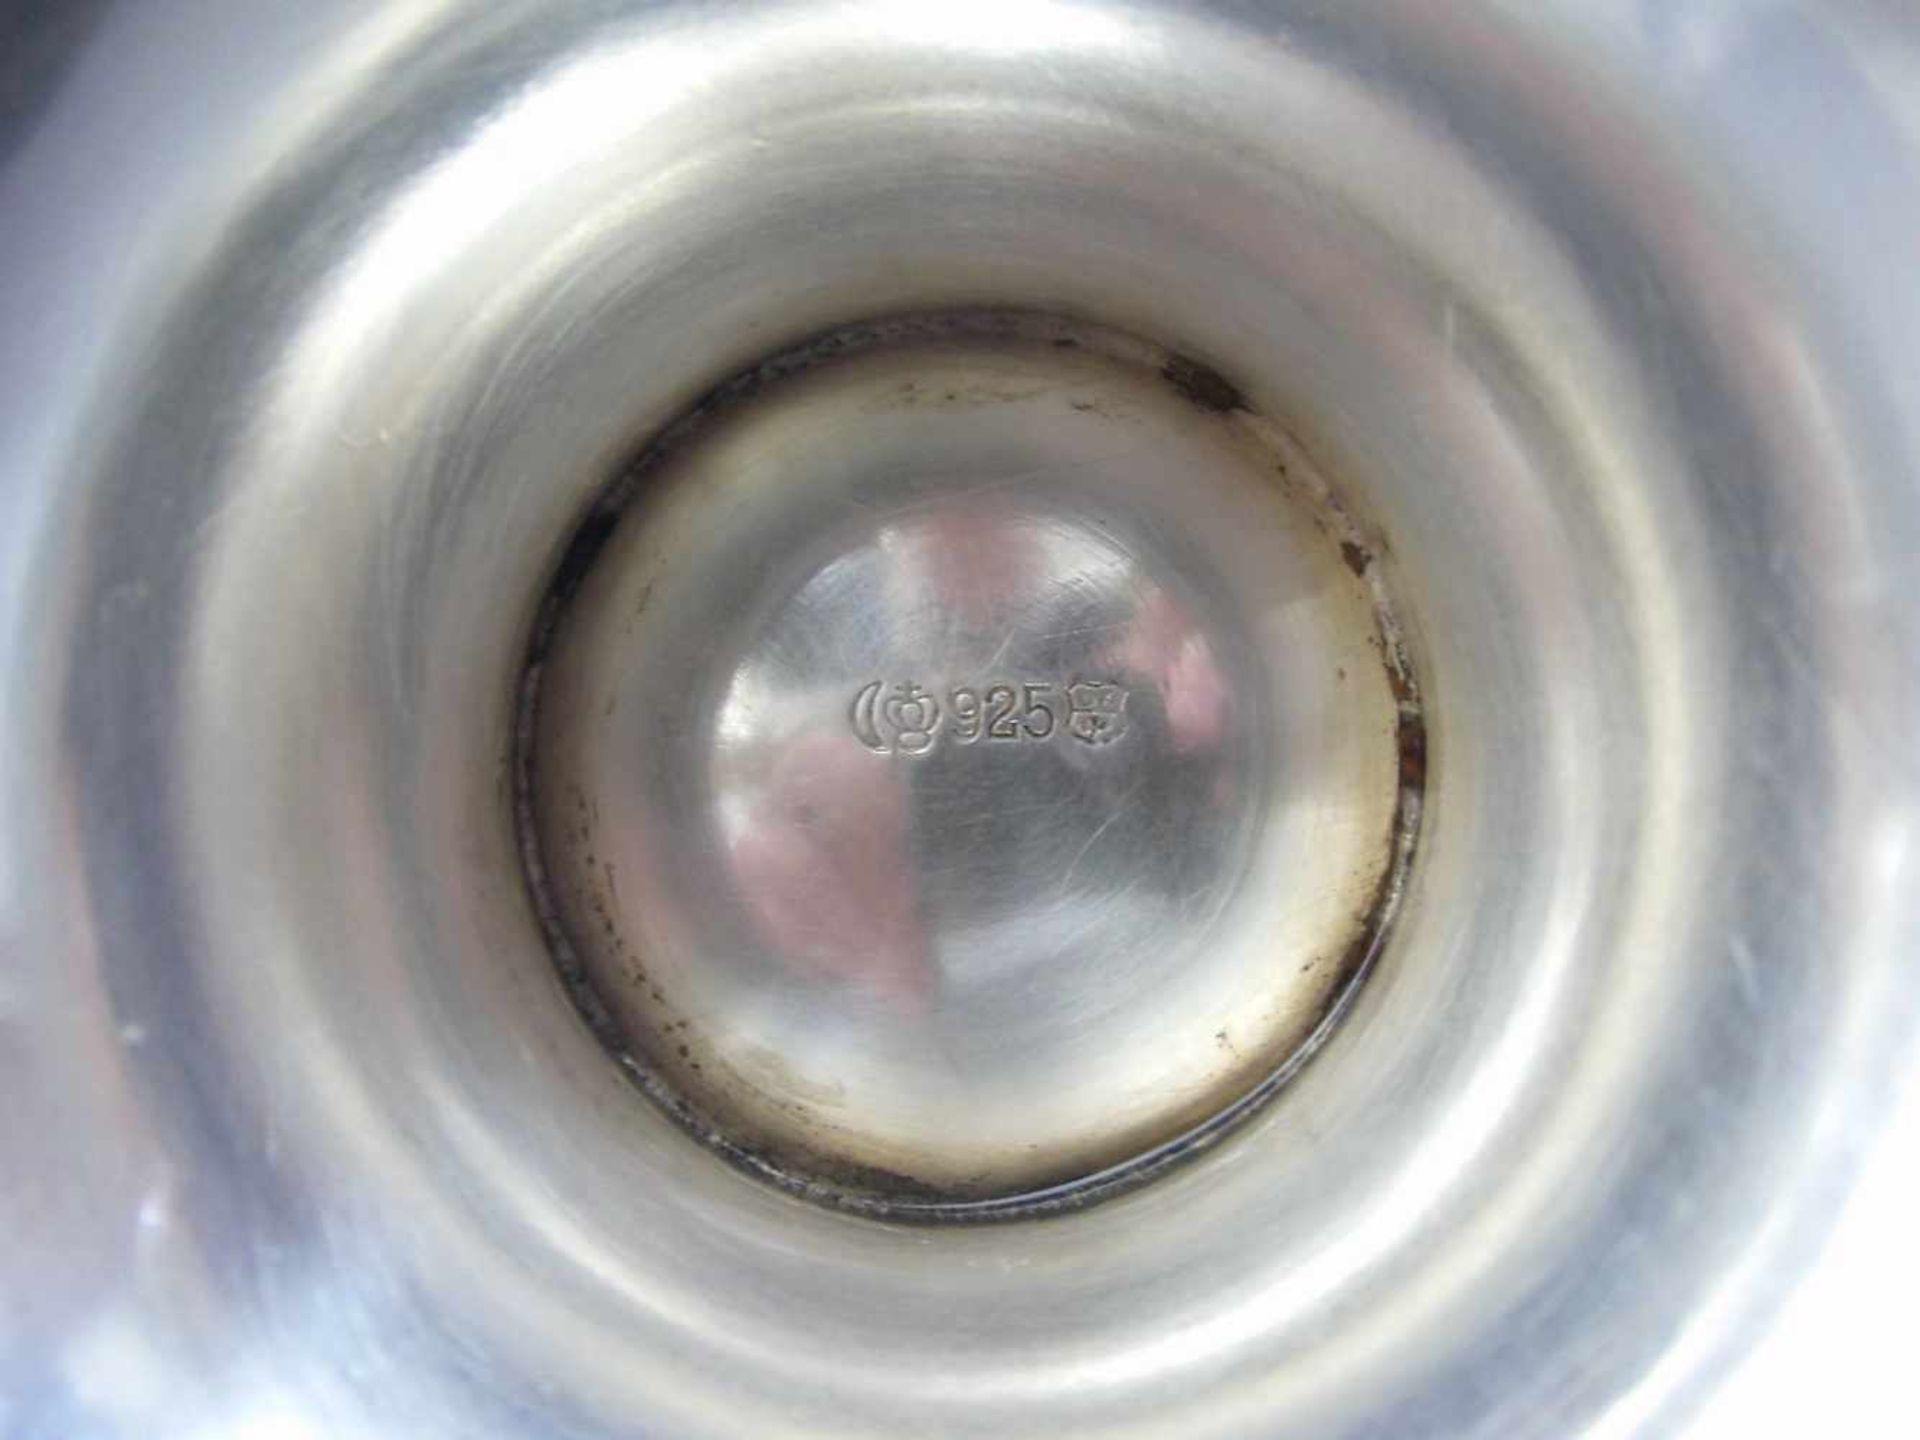 SILBERKANNE MIT ELFENBEINMONTUR, 925 Silber (450 g), gepunzt mit Halbmond, Krone, - Bild 4 aus 4